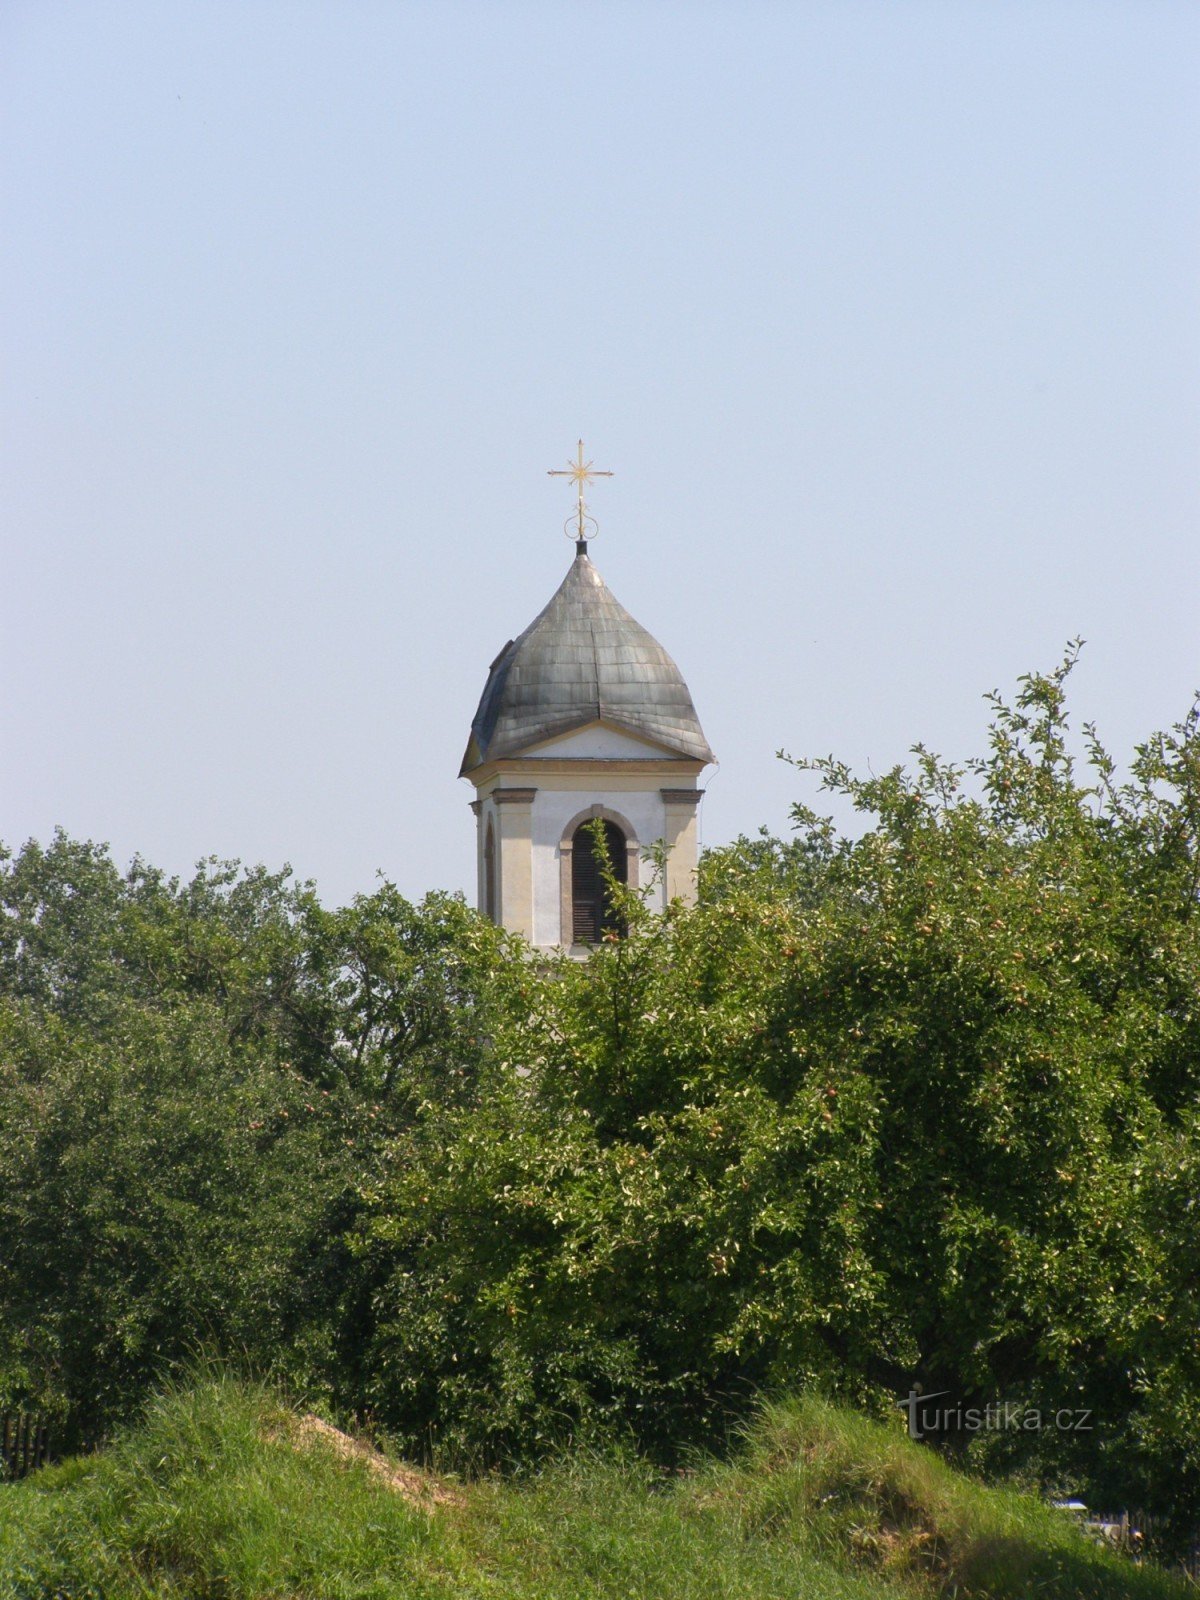 Hřídelec - igreja de St. Jorge